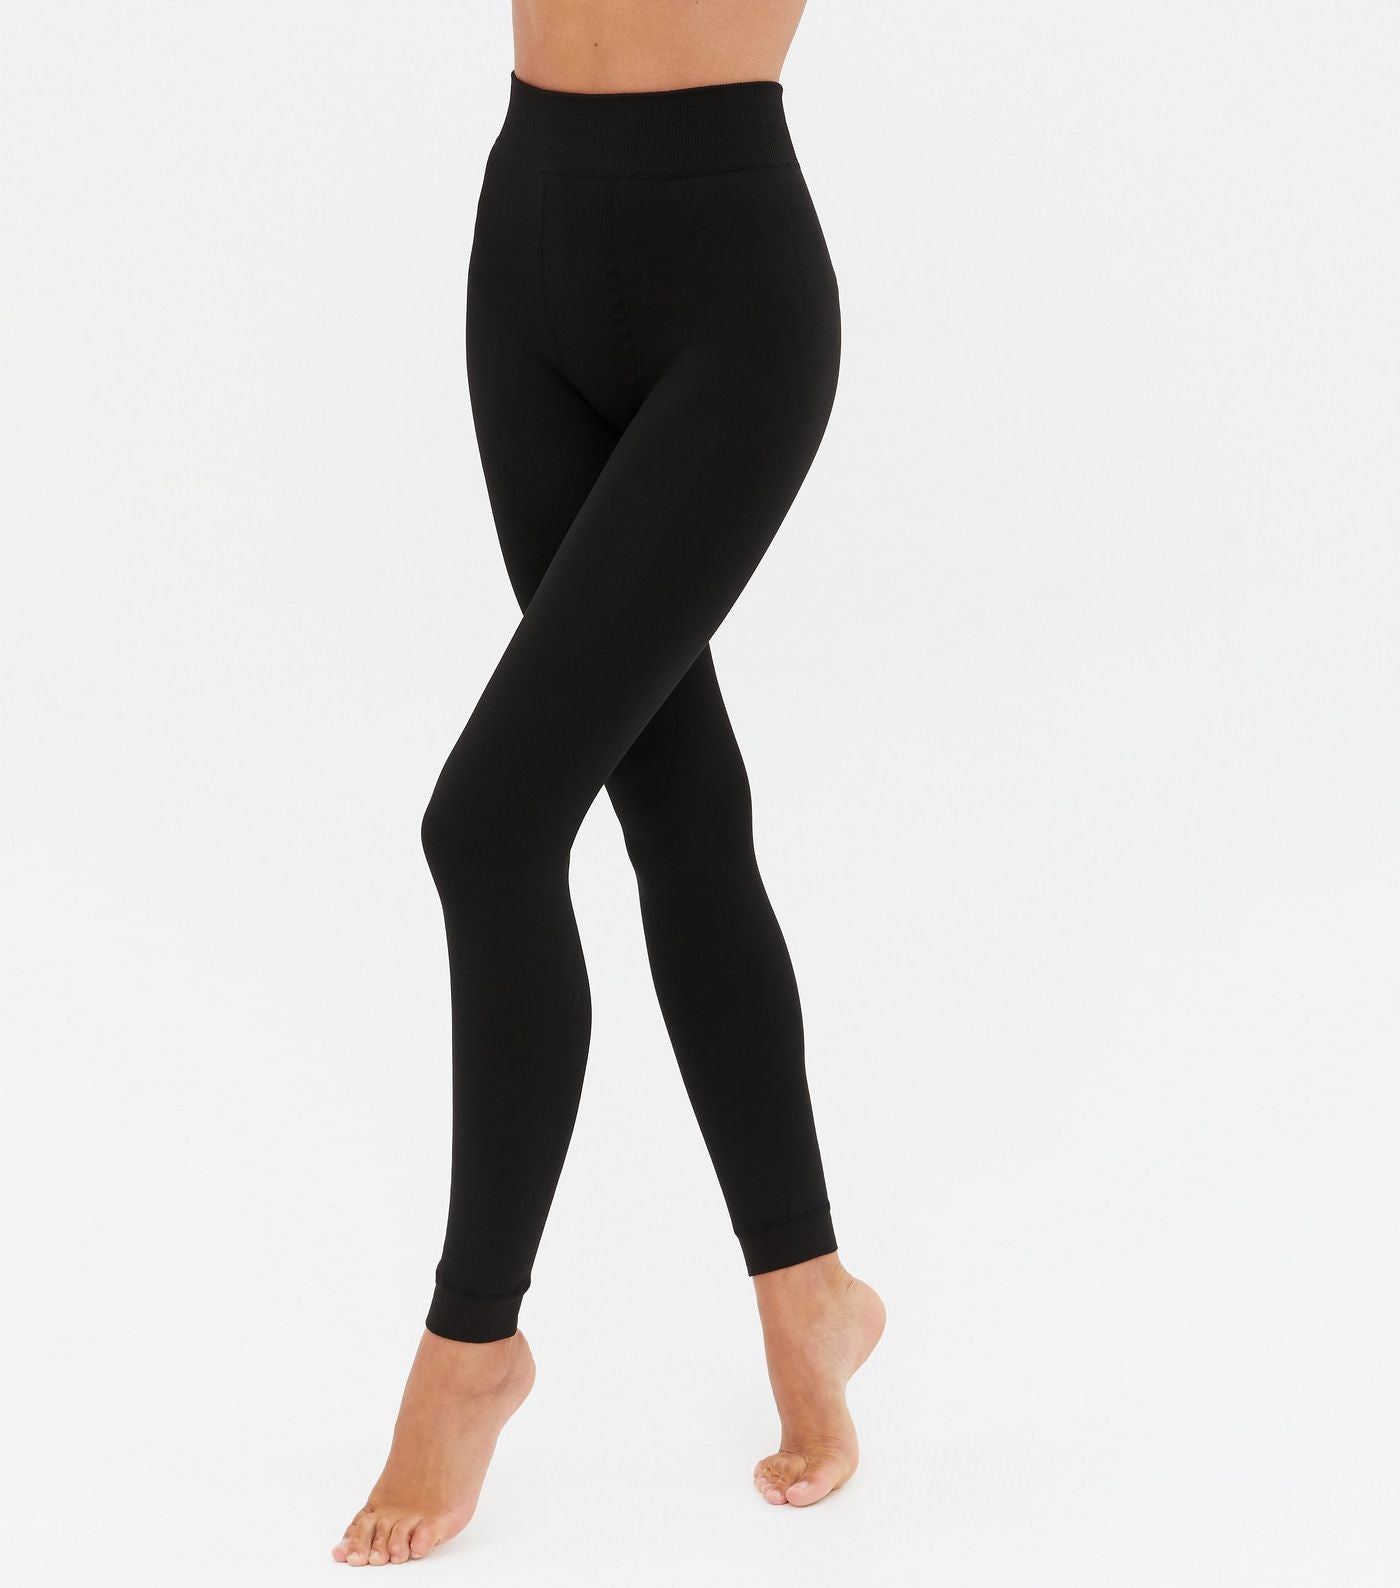 Fleece Lined Leggings Ellen Reyes Black 2 pack Luxurious Soft – London Week  Fashion